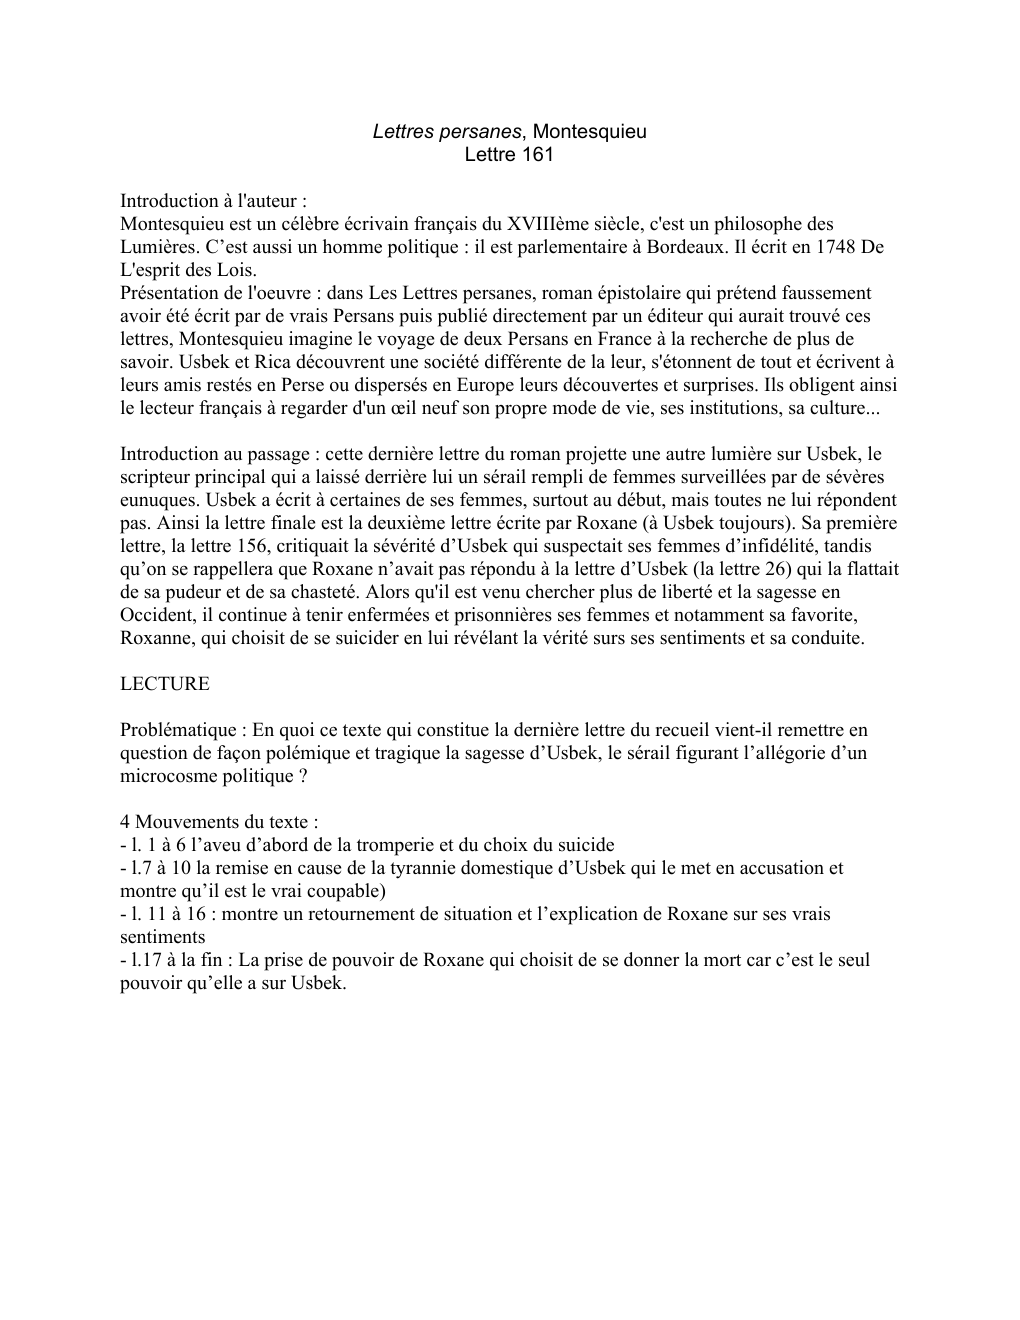 Prévisualisation du document Montesquieu, Lettres persanes, lettre 161